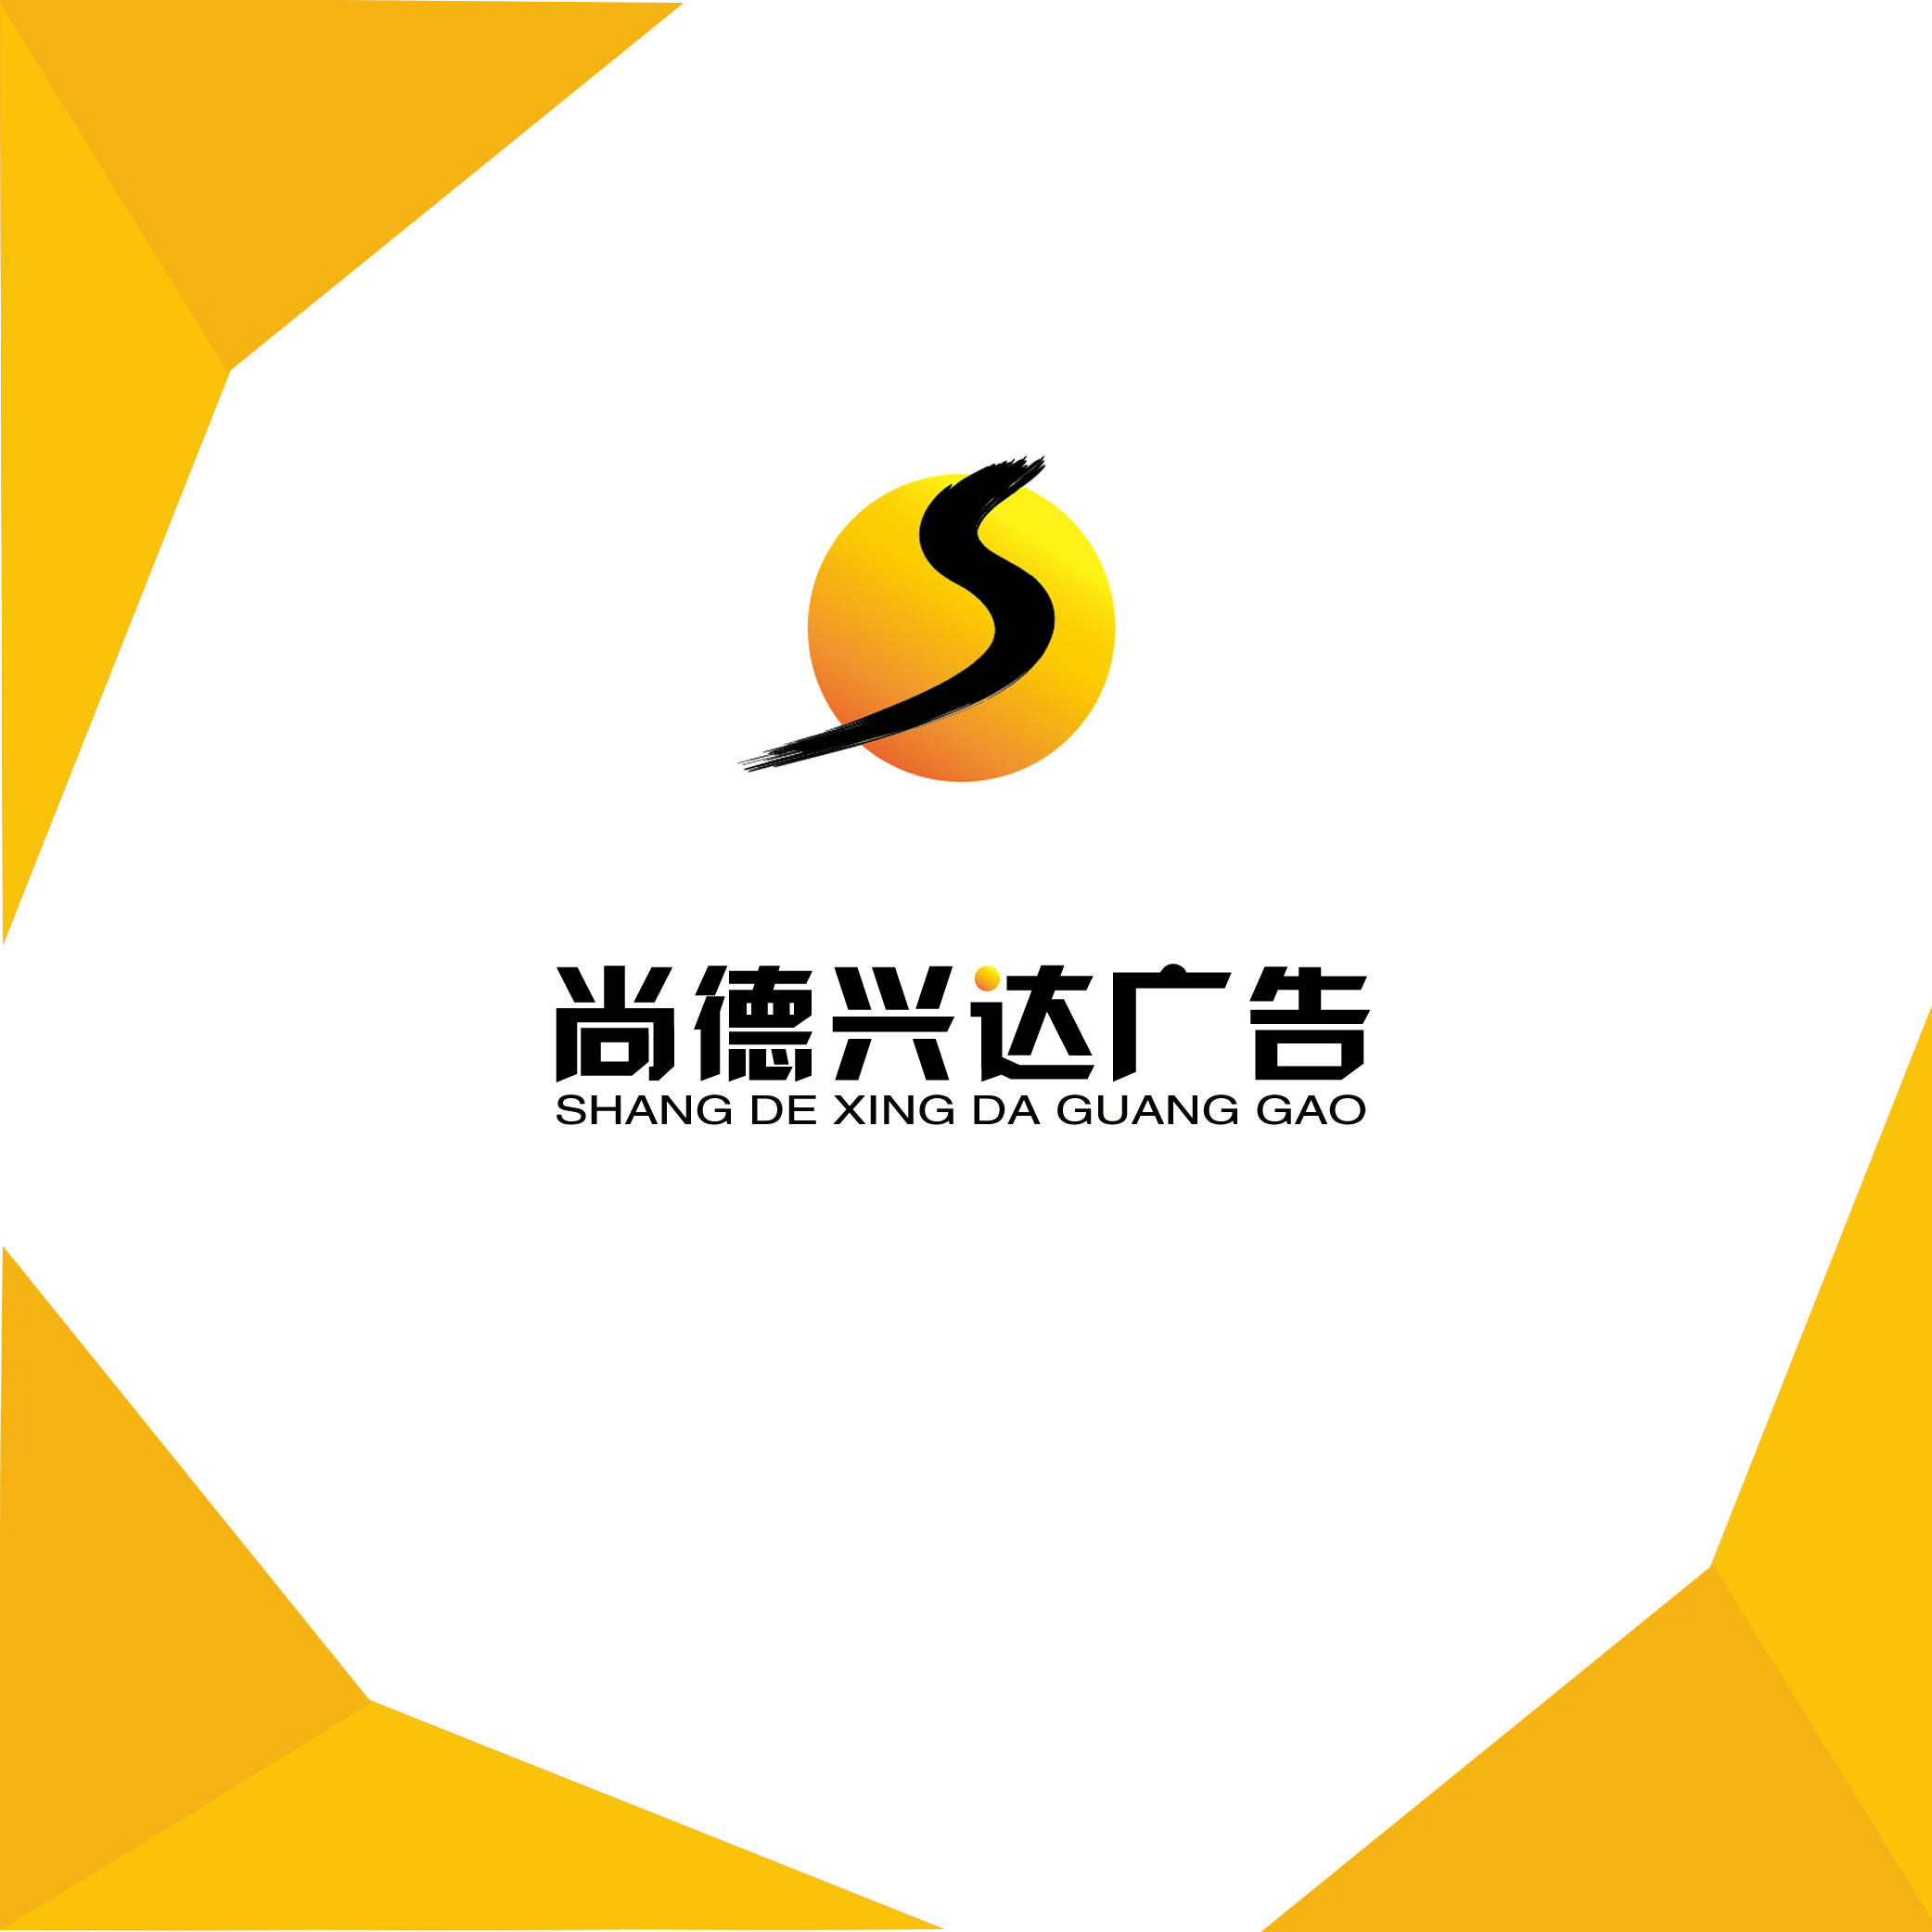 2008年 北京尚德兴达广告公司成立